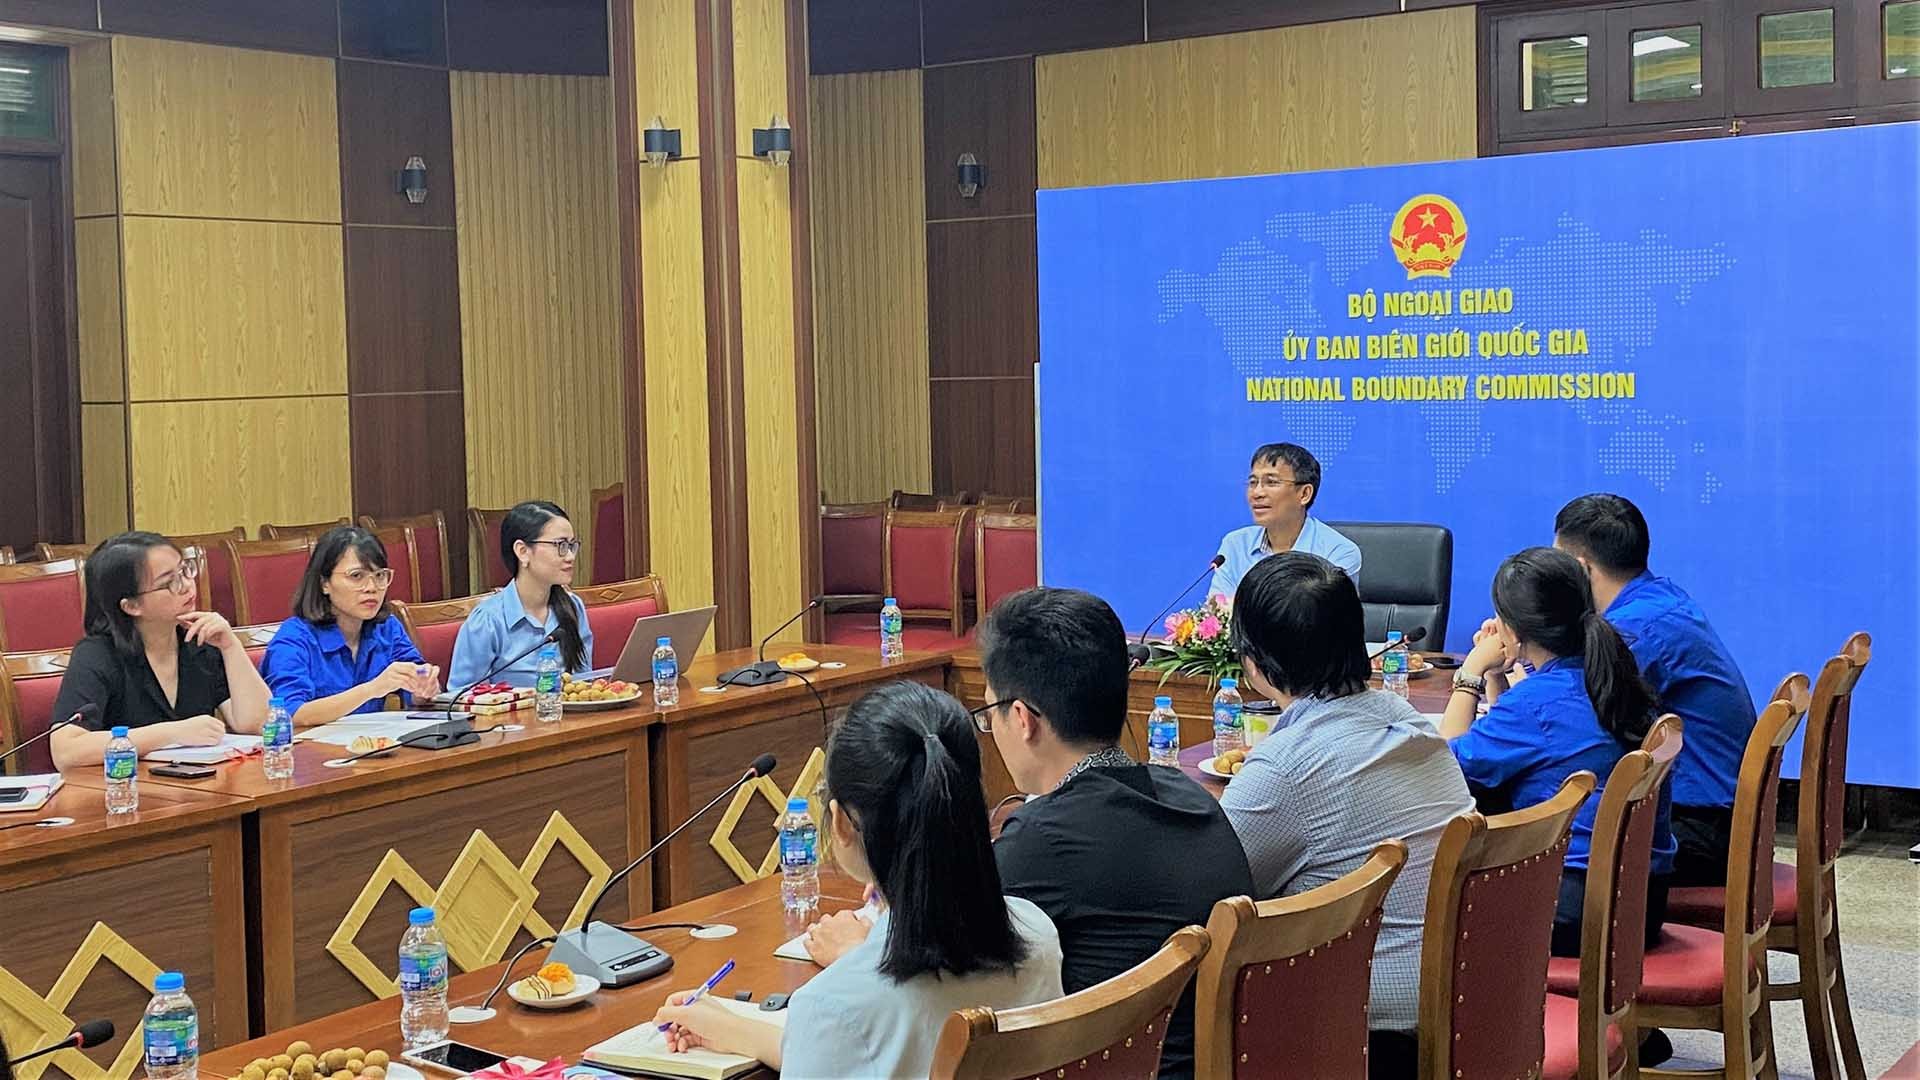 Thứ trưởng Thường trực Nguyễn Minh Vũ giao lưu cùng thanh niên Ủy ban Biên giới quốc gia